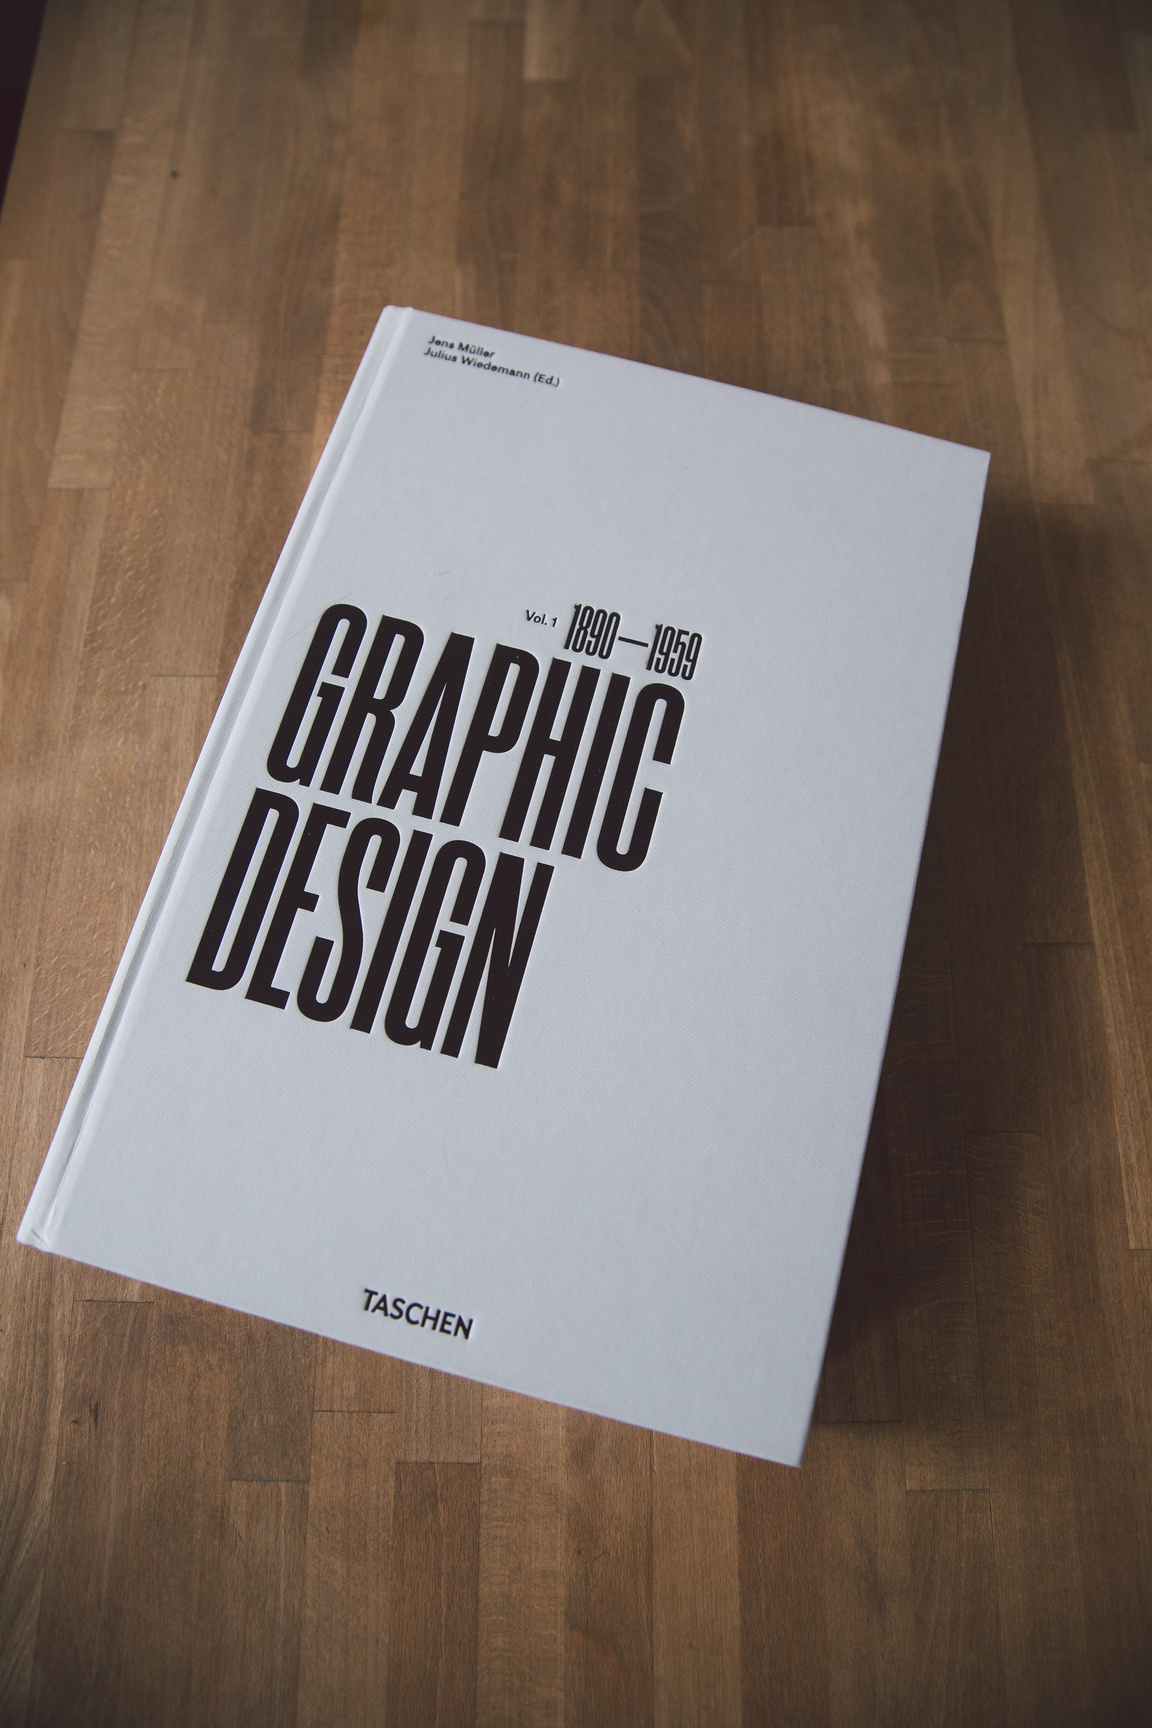 White and Black Graphic Design Book